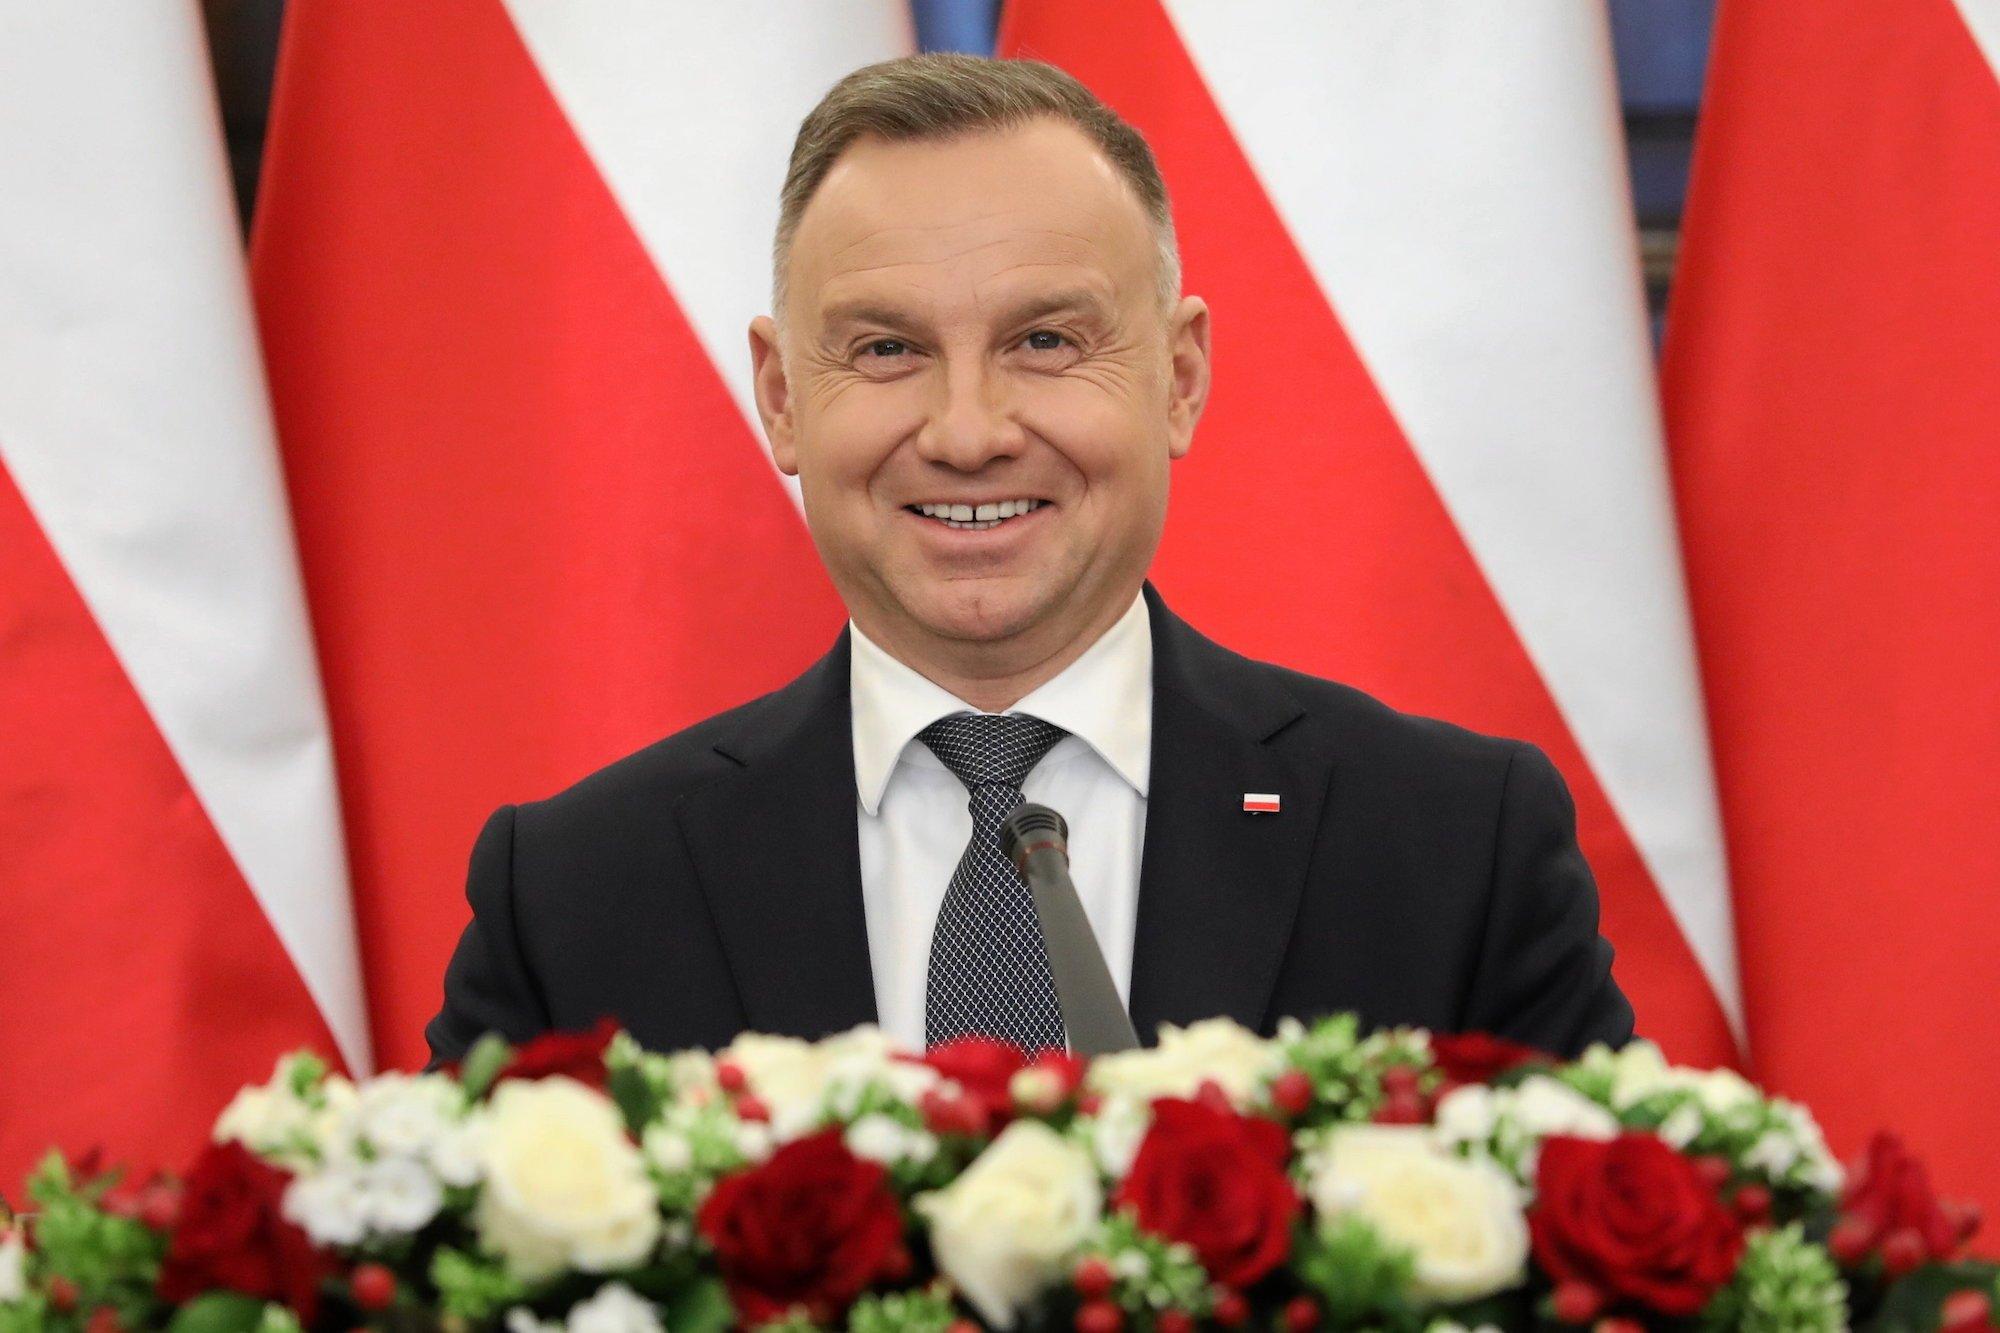 Szeroko uśmiechnięty prezydent Andrzej Duda na tle biało-czerwonych flag. Na pierwszym planie bukiet z białych i czerwonych róż.